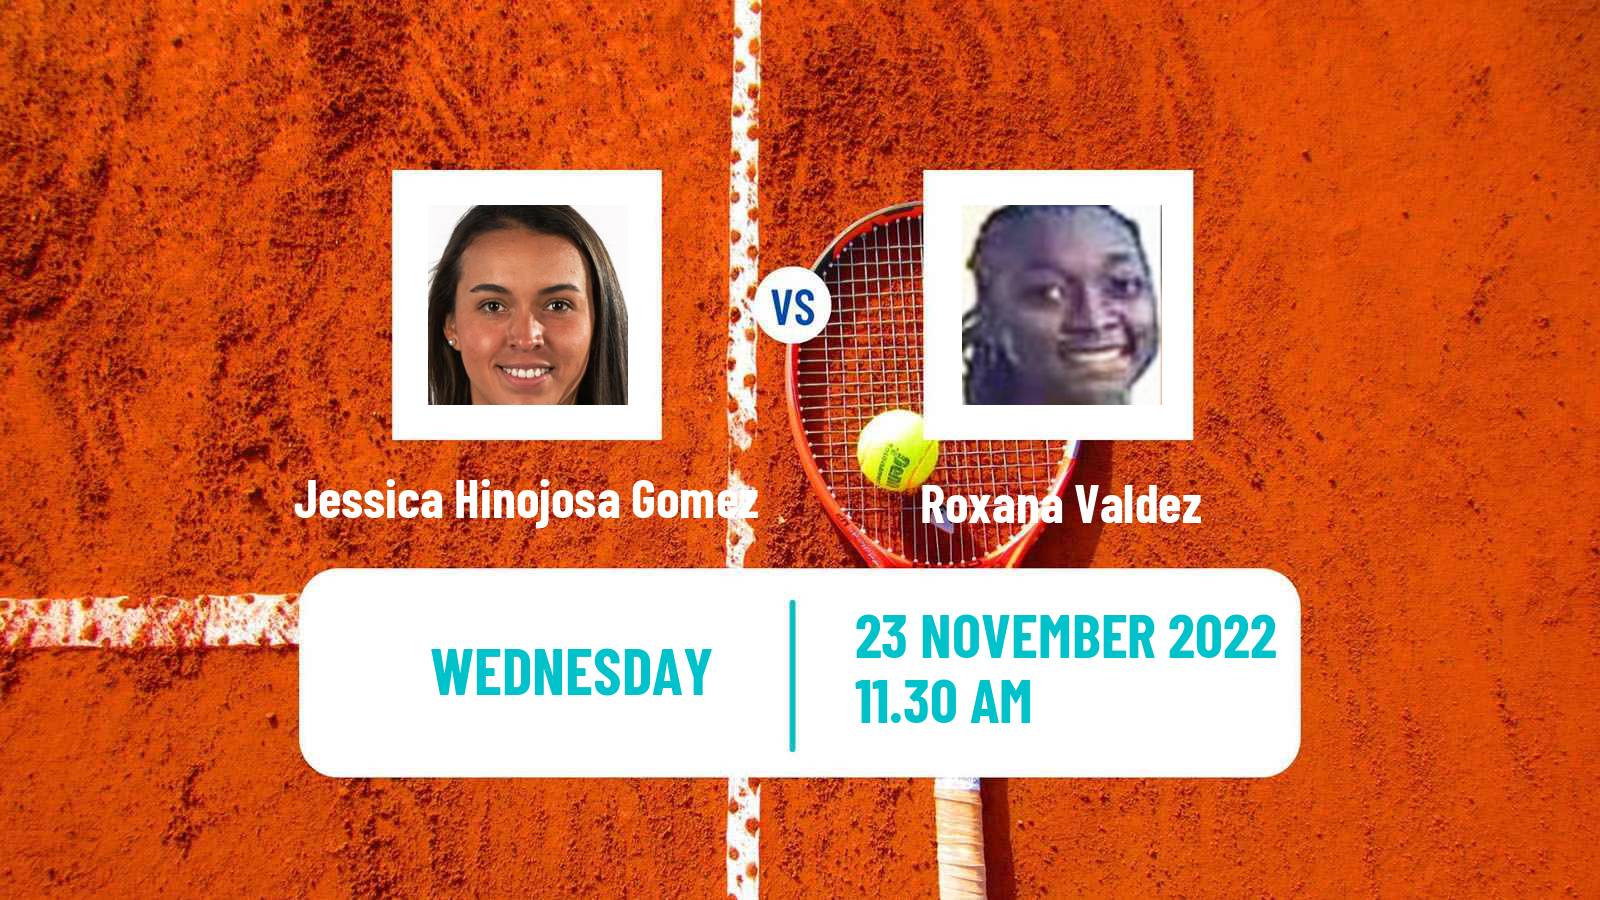 Tennis ITF Tournaments Jessica Hinojosa Gomez - Roxana Valdez